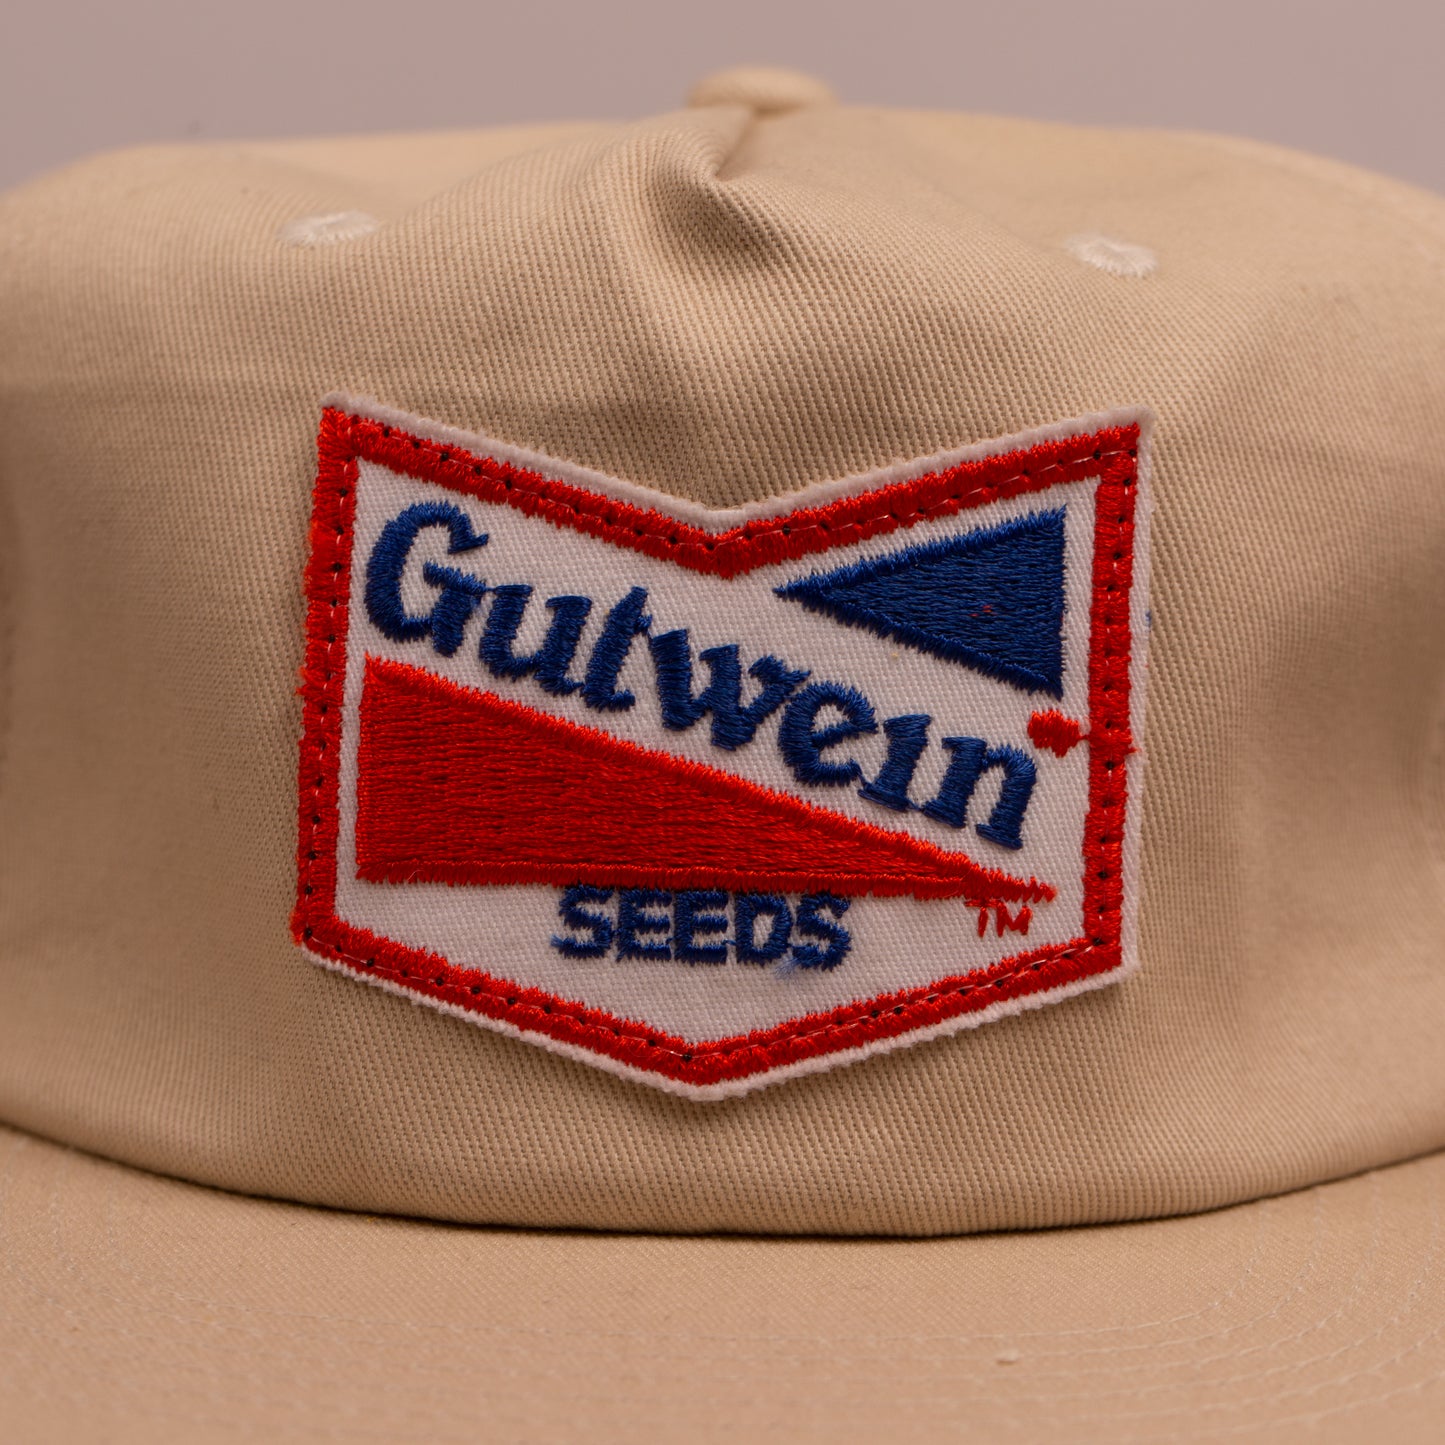 Gutwein Seeds